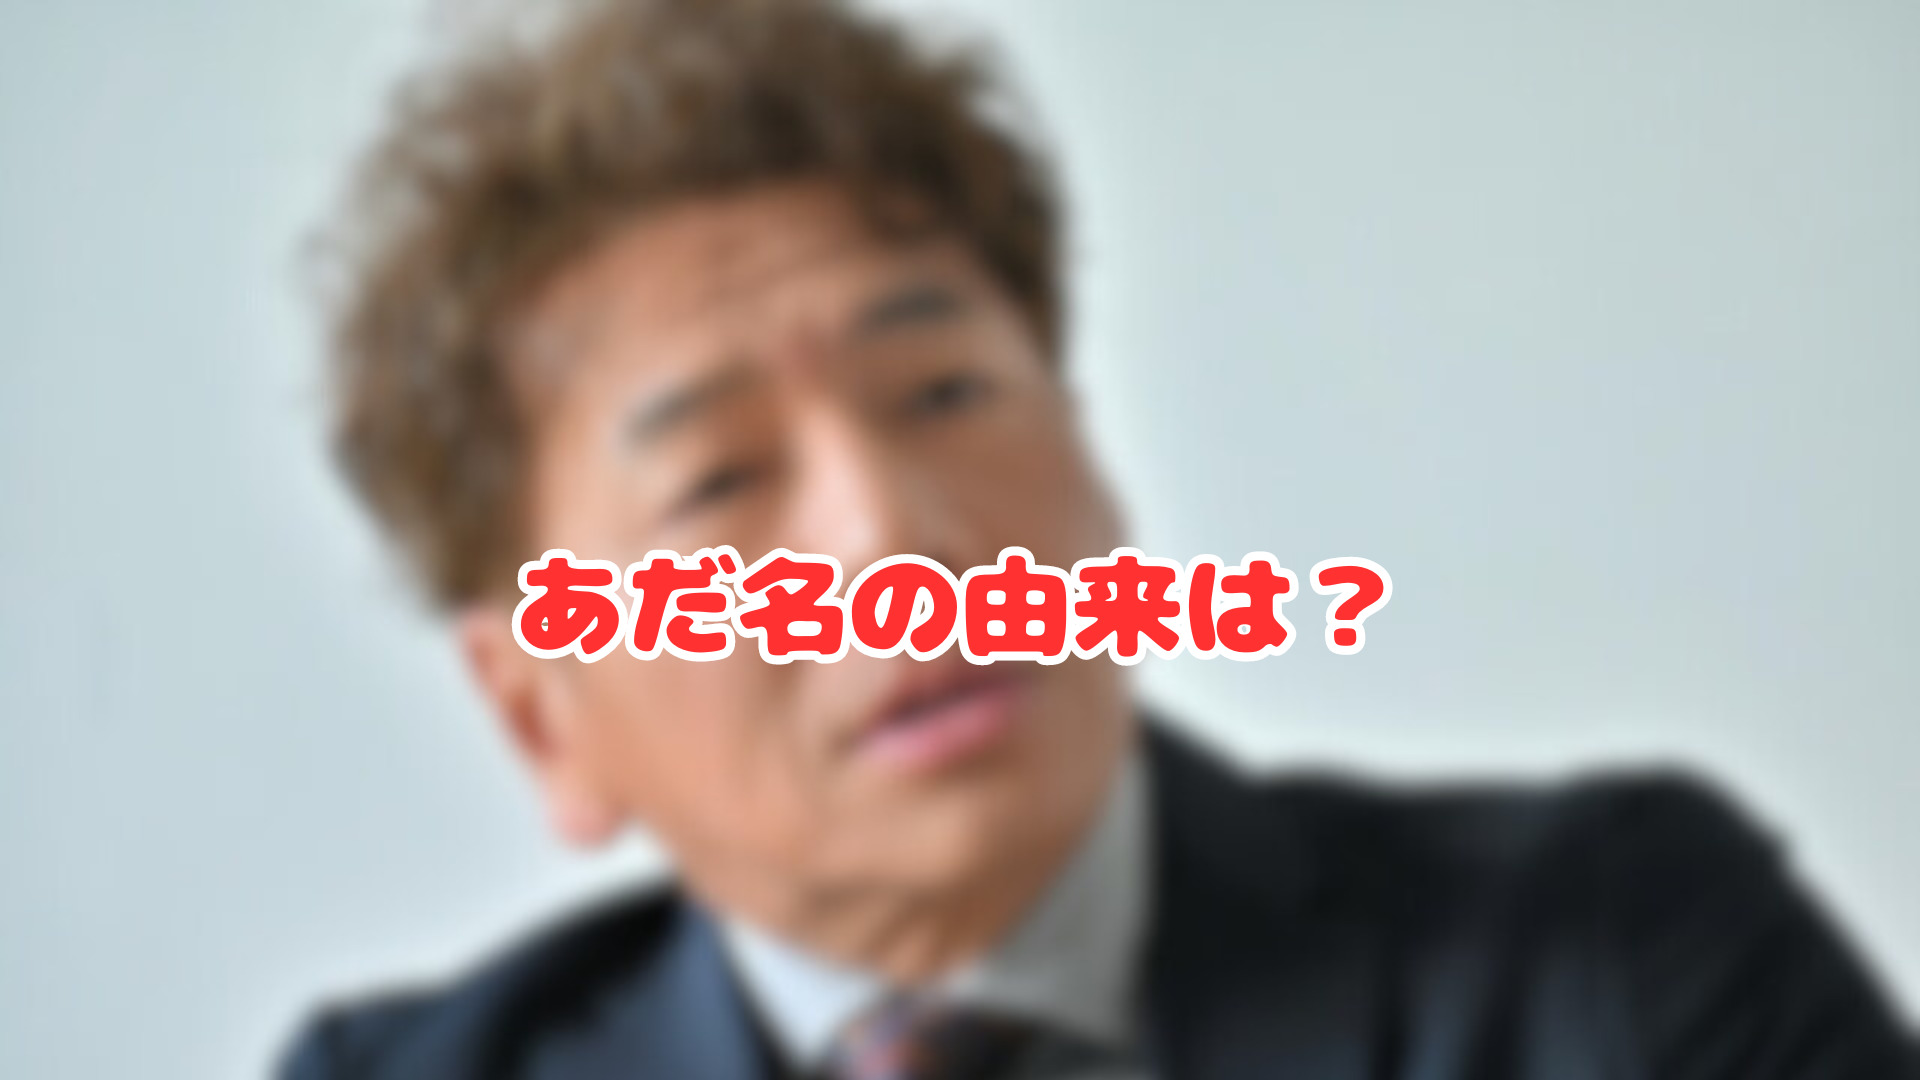 上田晋也のあだ名カメとかぴょんすの理由や経緯の記事のアイキャッチ画像